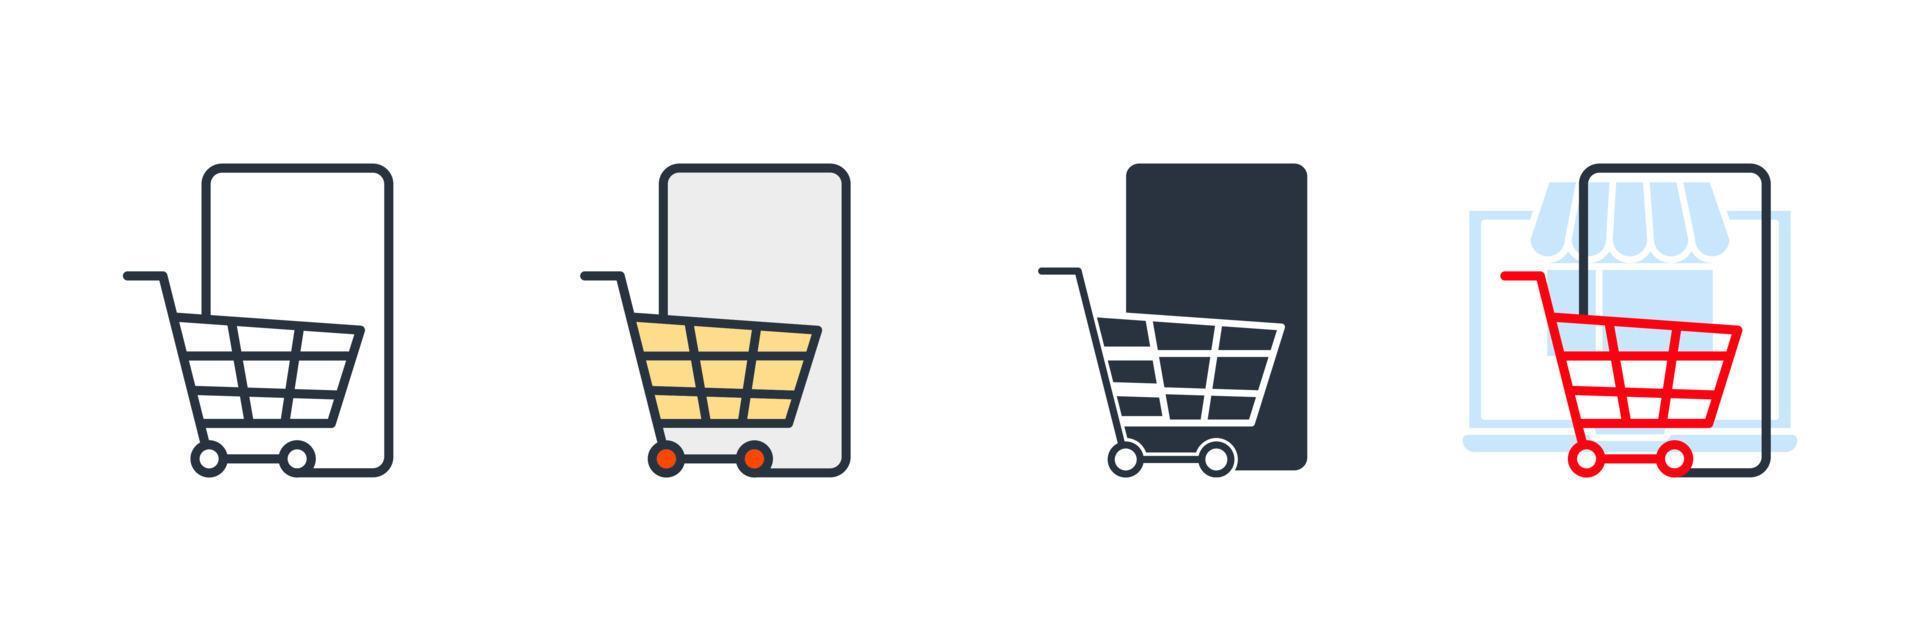 E-Commerce-Symbol-Logo-Vektor-Illustration. Einkaufswagen- und Smartphone-Symbolvorlage für Grafik- und Webdesign-Sammlung vektor